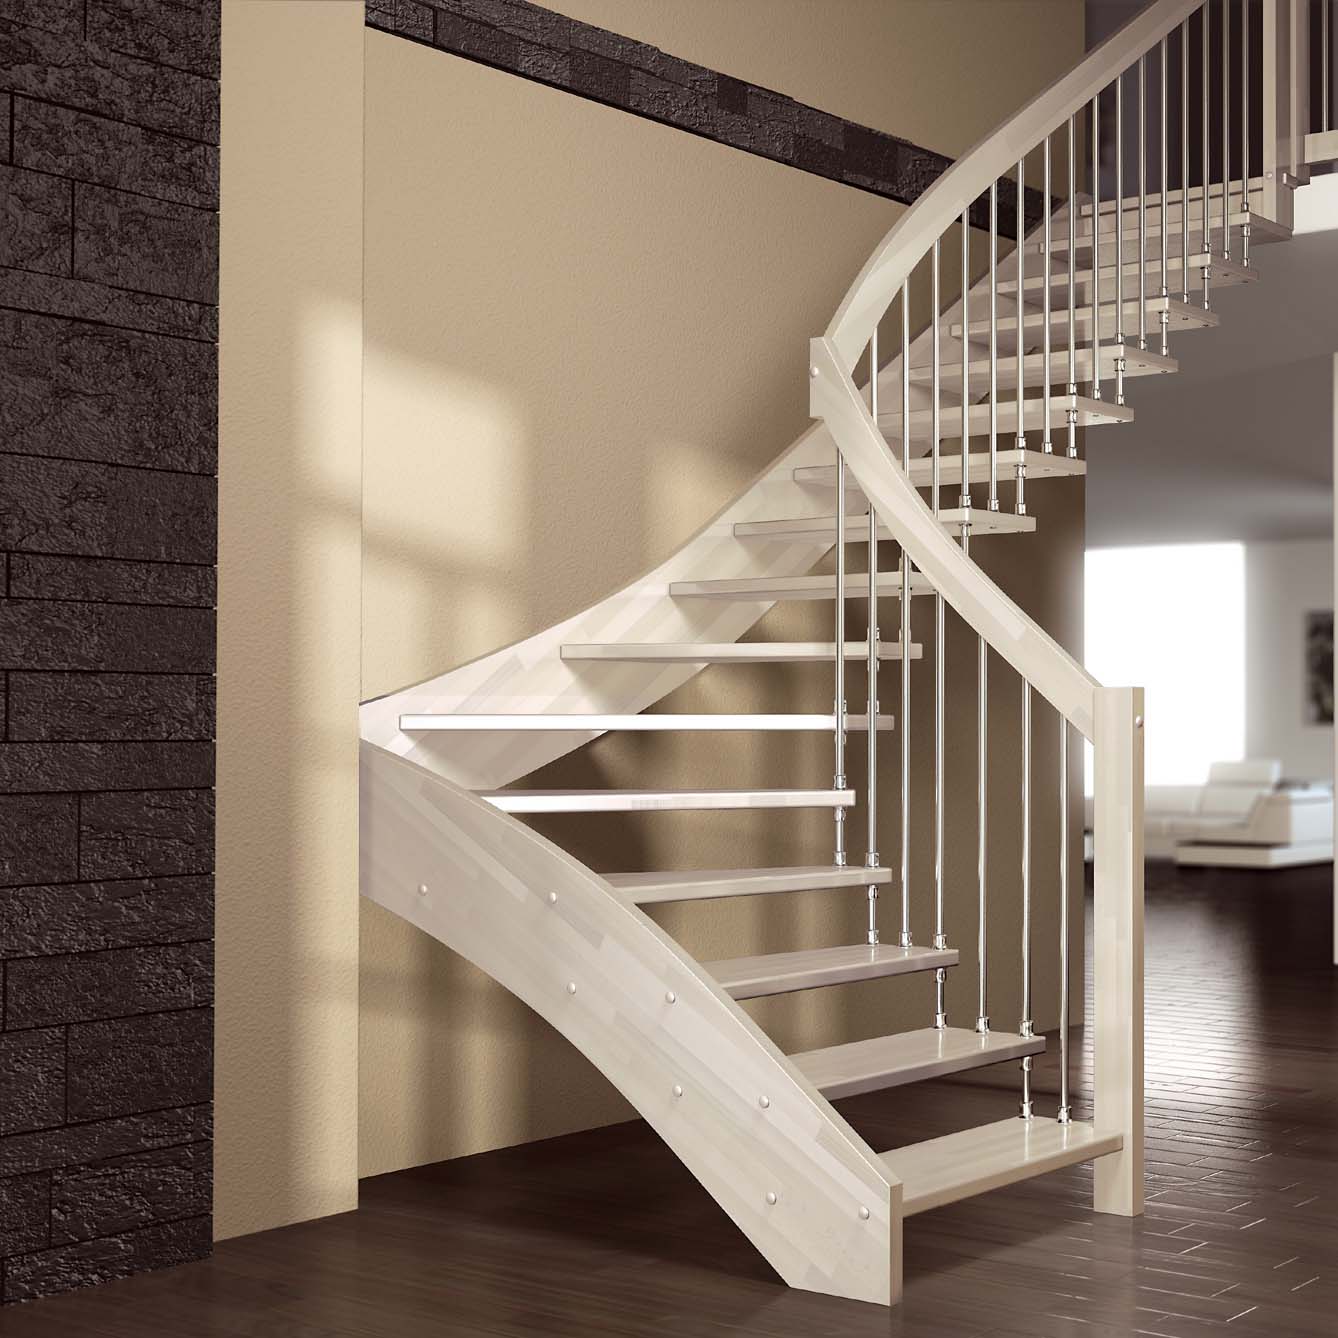 Най-добрите модели на стълби към селска къща или апартамент на втория етаж